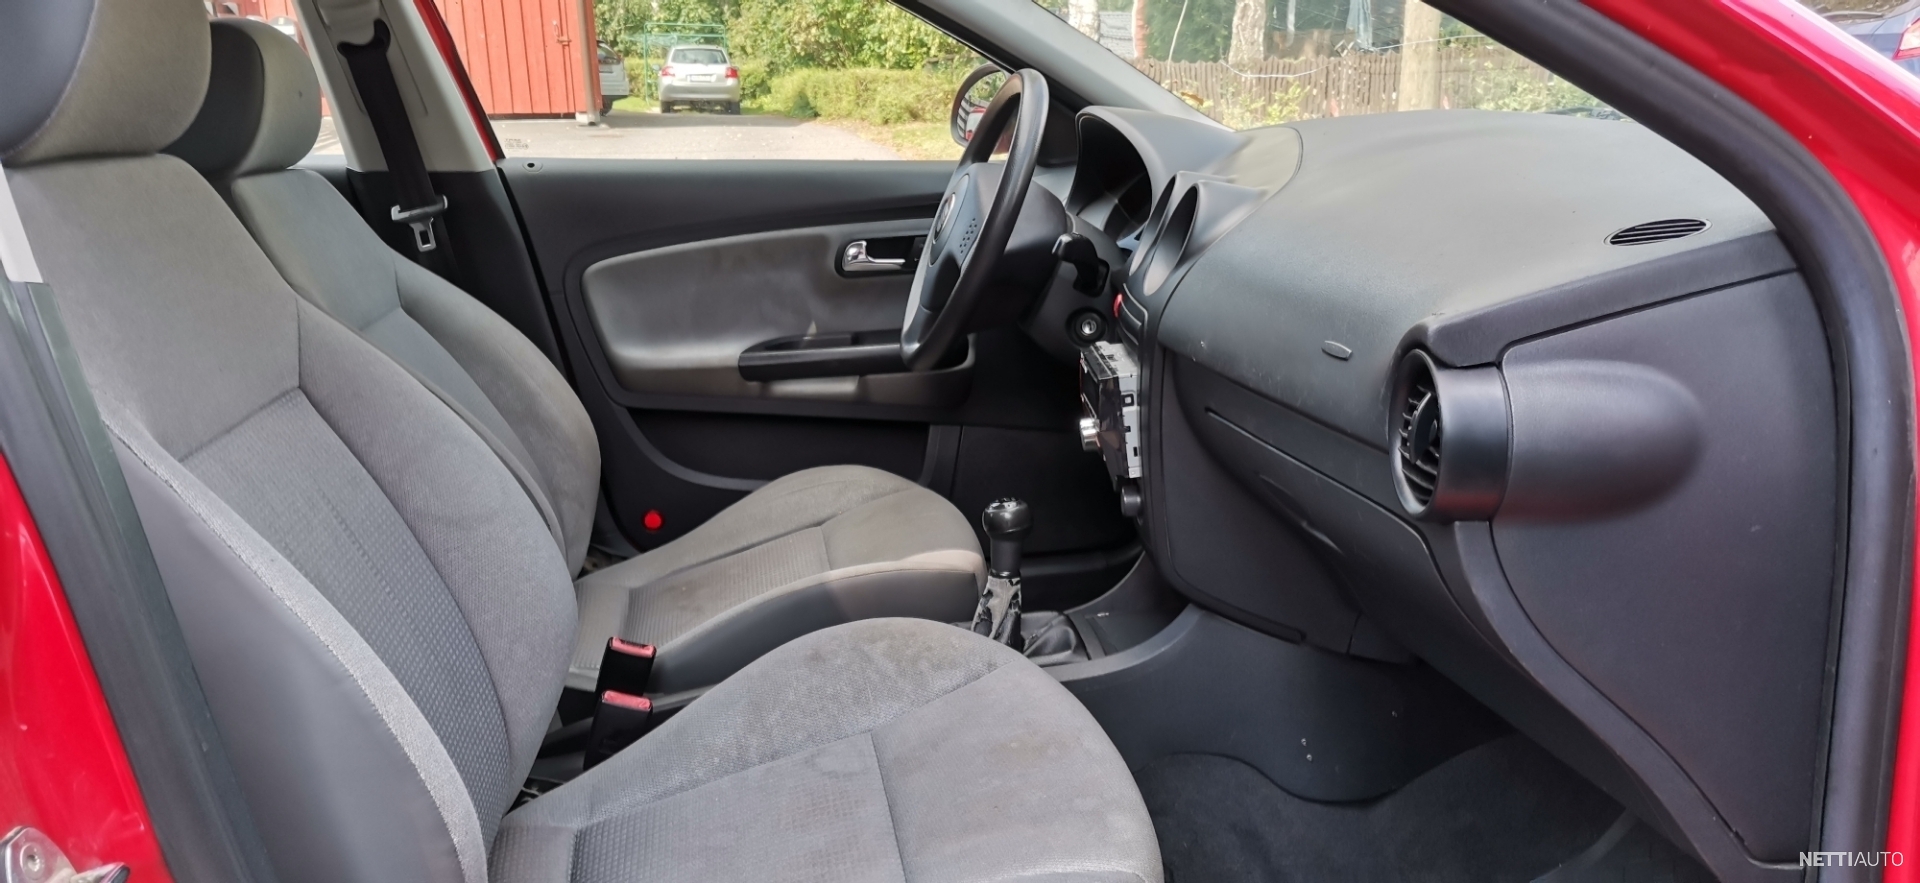 Reparaturanleitung Seat Cordoba, Seat Ibiza, VW Polo IV